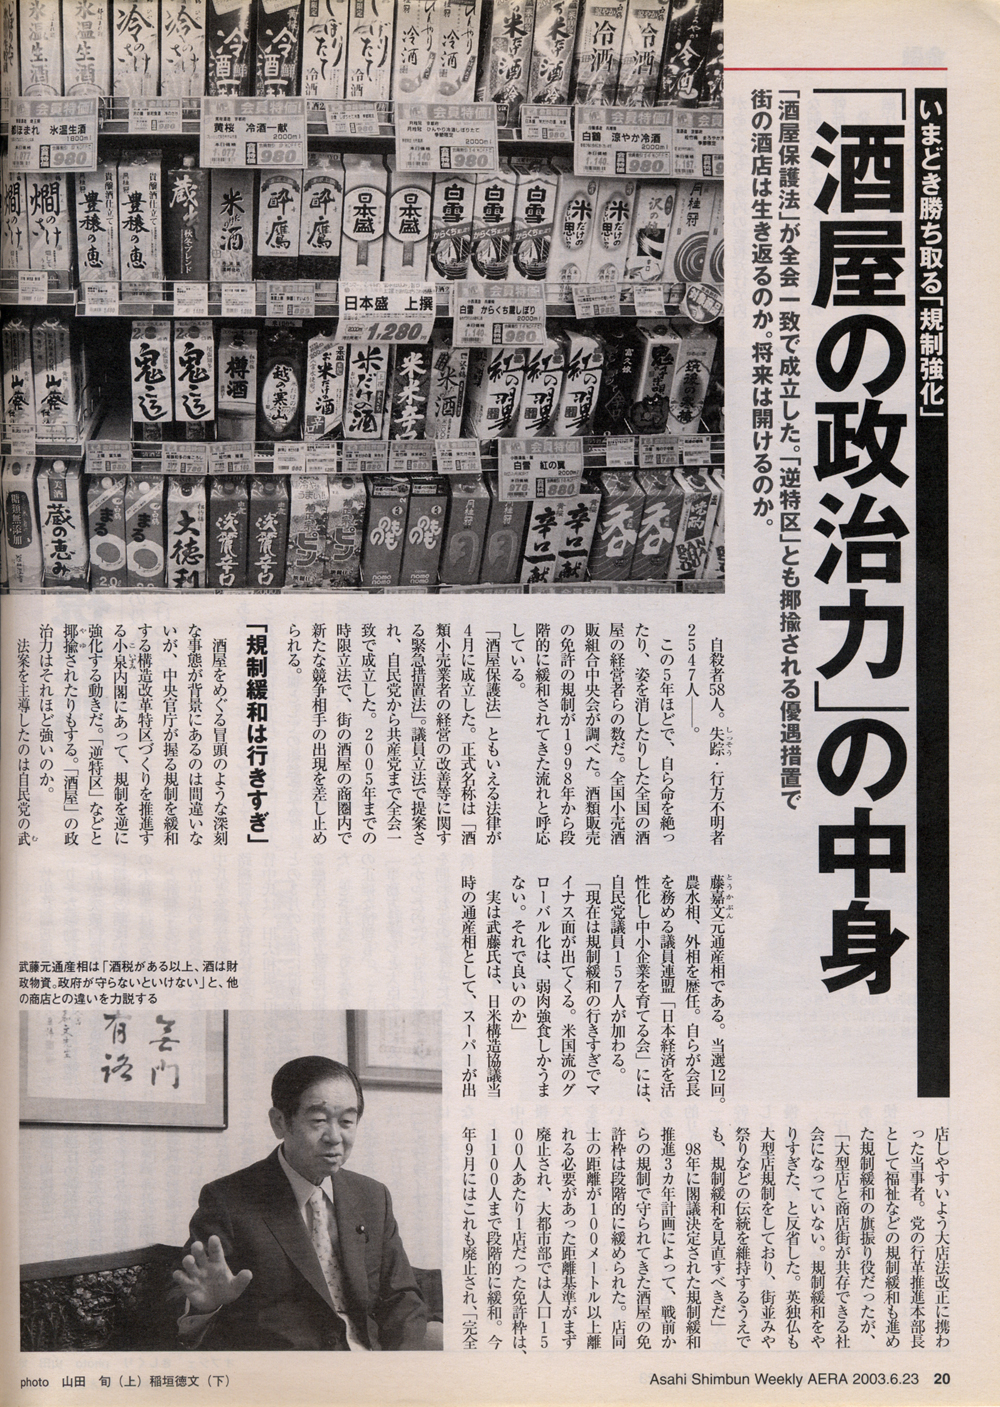 2003年6月23日 朝日新聞社 「AERA」 いまどき勝ち取る「規制強化」 「酒屋の政治力」の中身